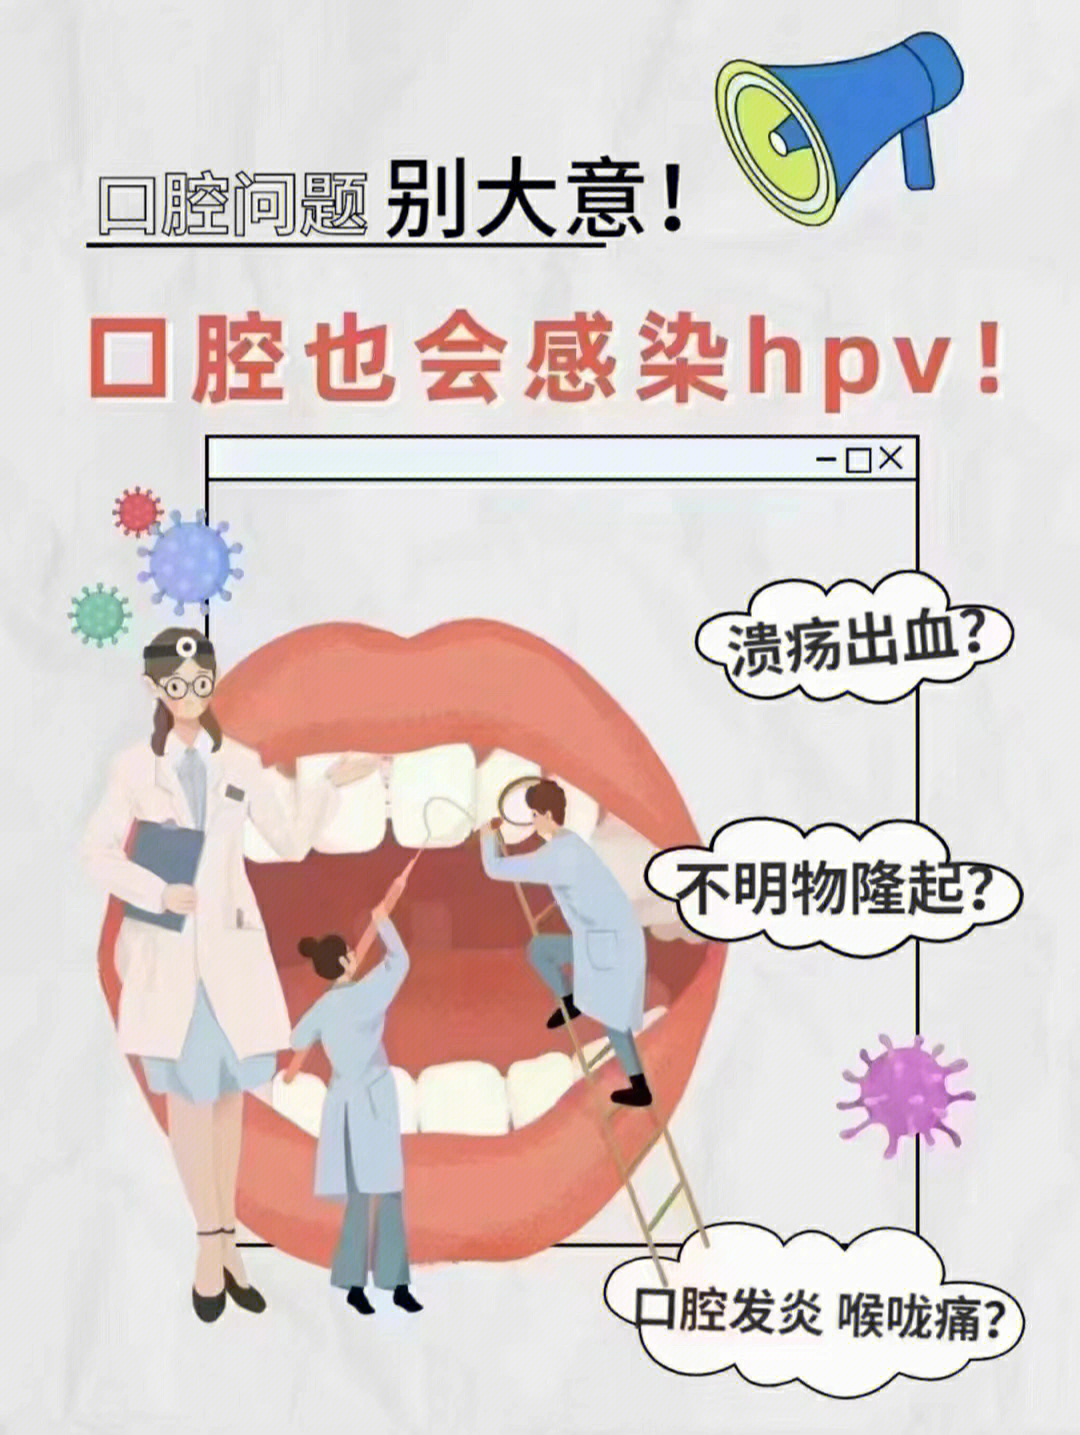 hpv口腔感染怎么治疗图片